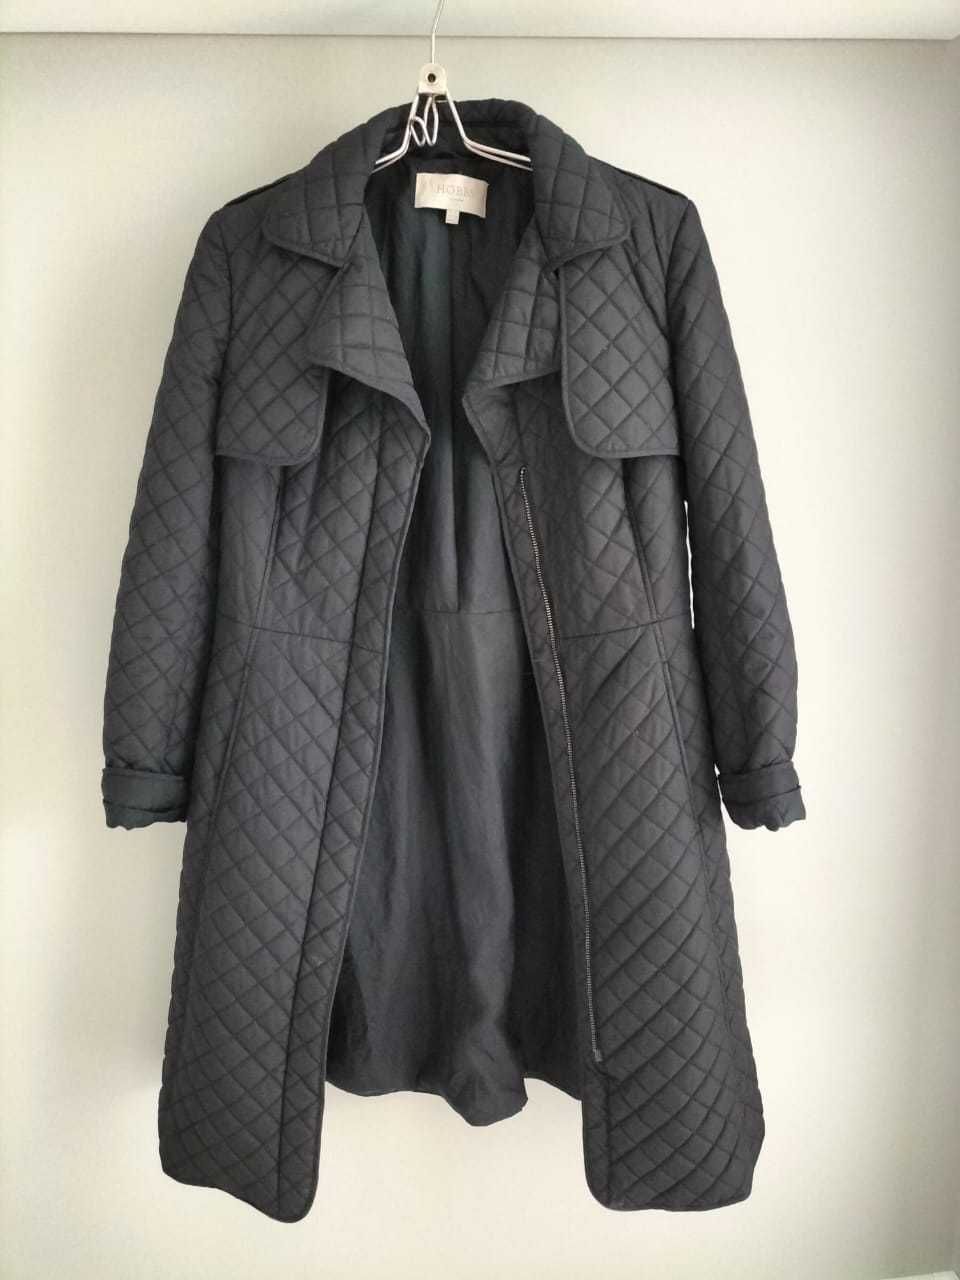 дешево, кардиган-полупальто, шерсть и черный плащ-пальто 44-46р